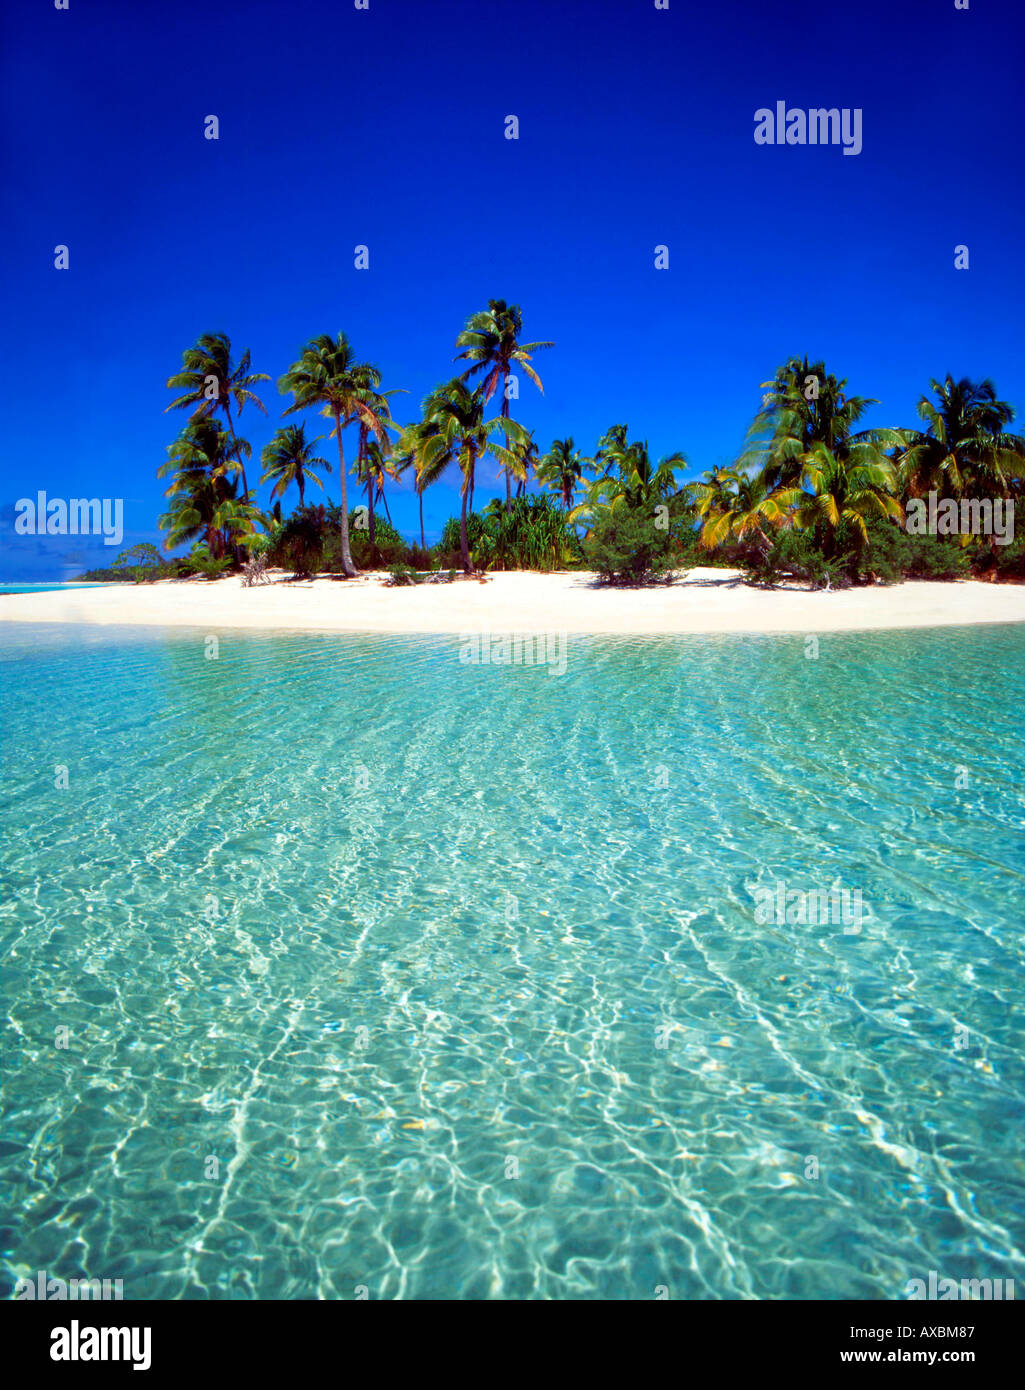 Sud Pacifico Isole Cook Aitutaki Lagoon un piede isola sogno spiaggia cristal acqua chiara Foto Stock